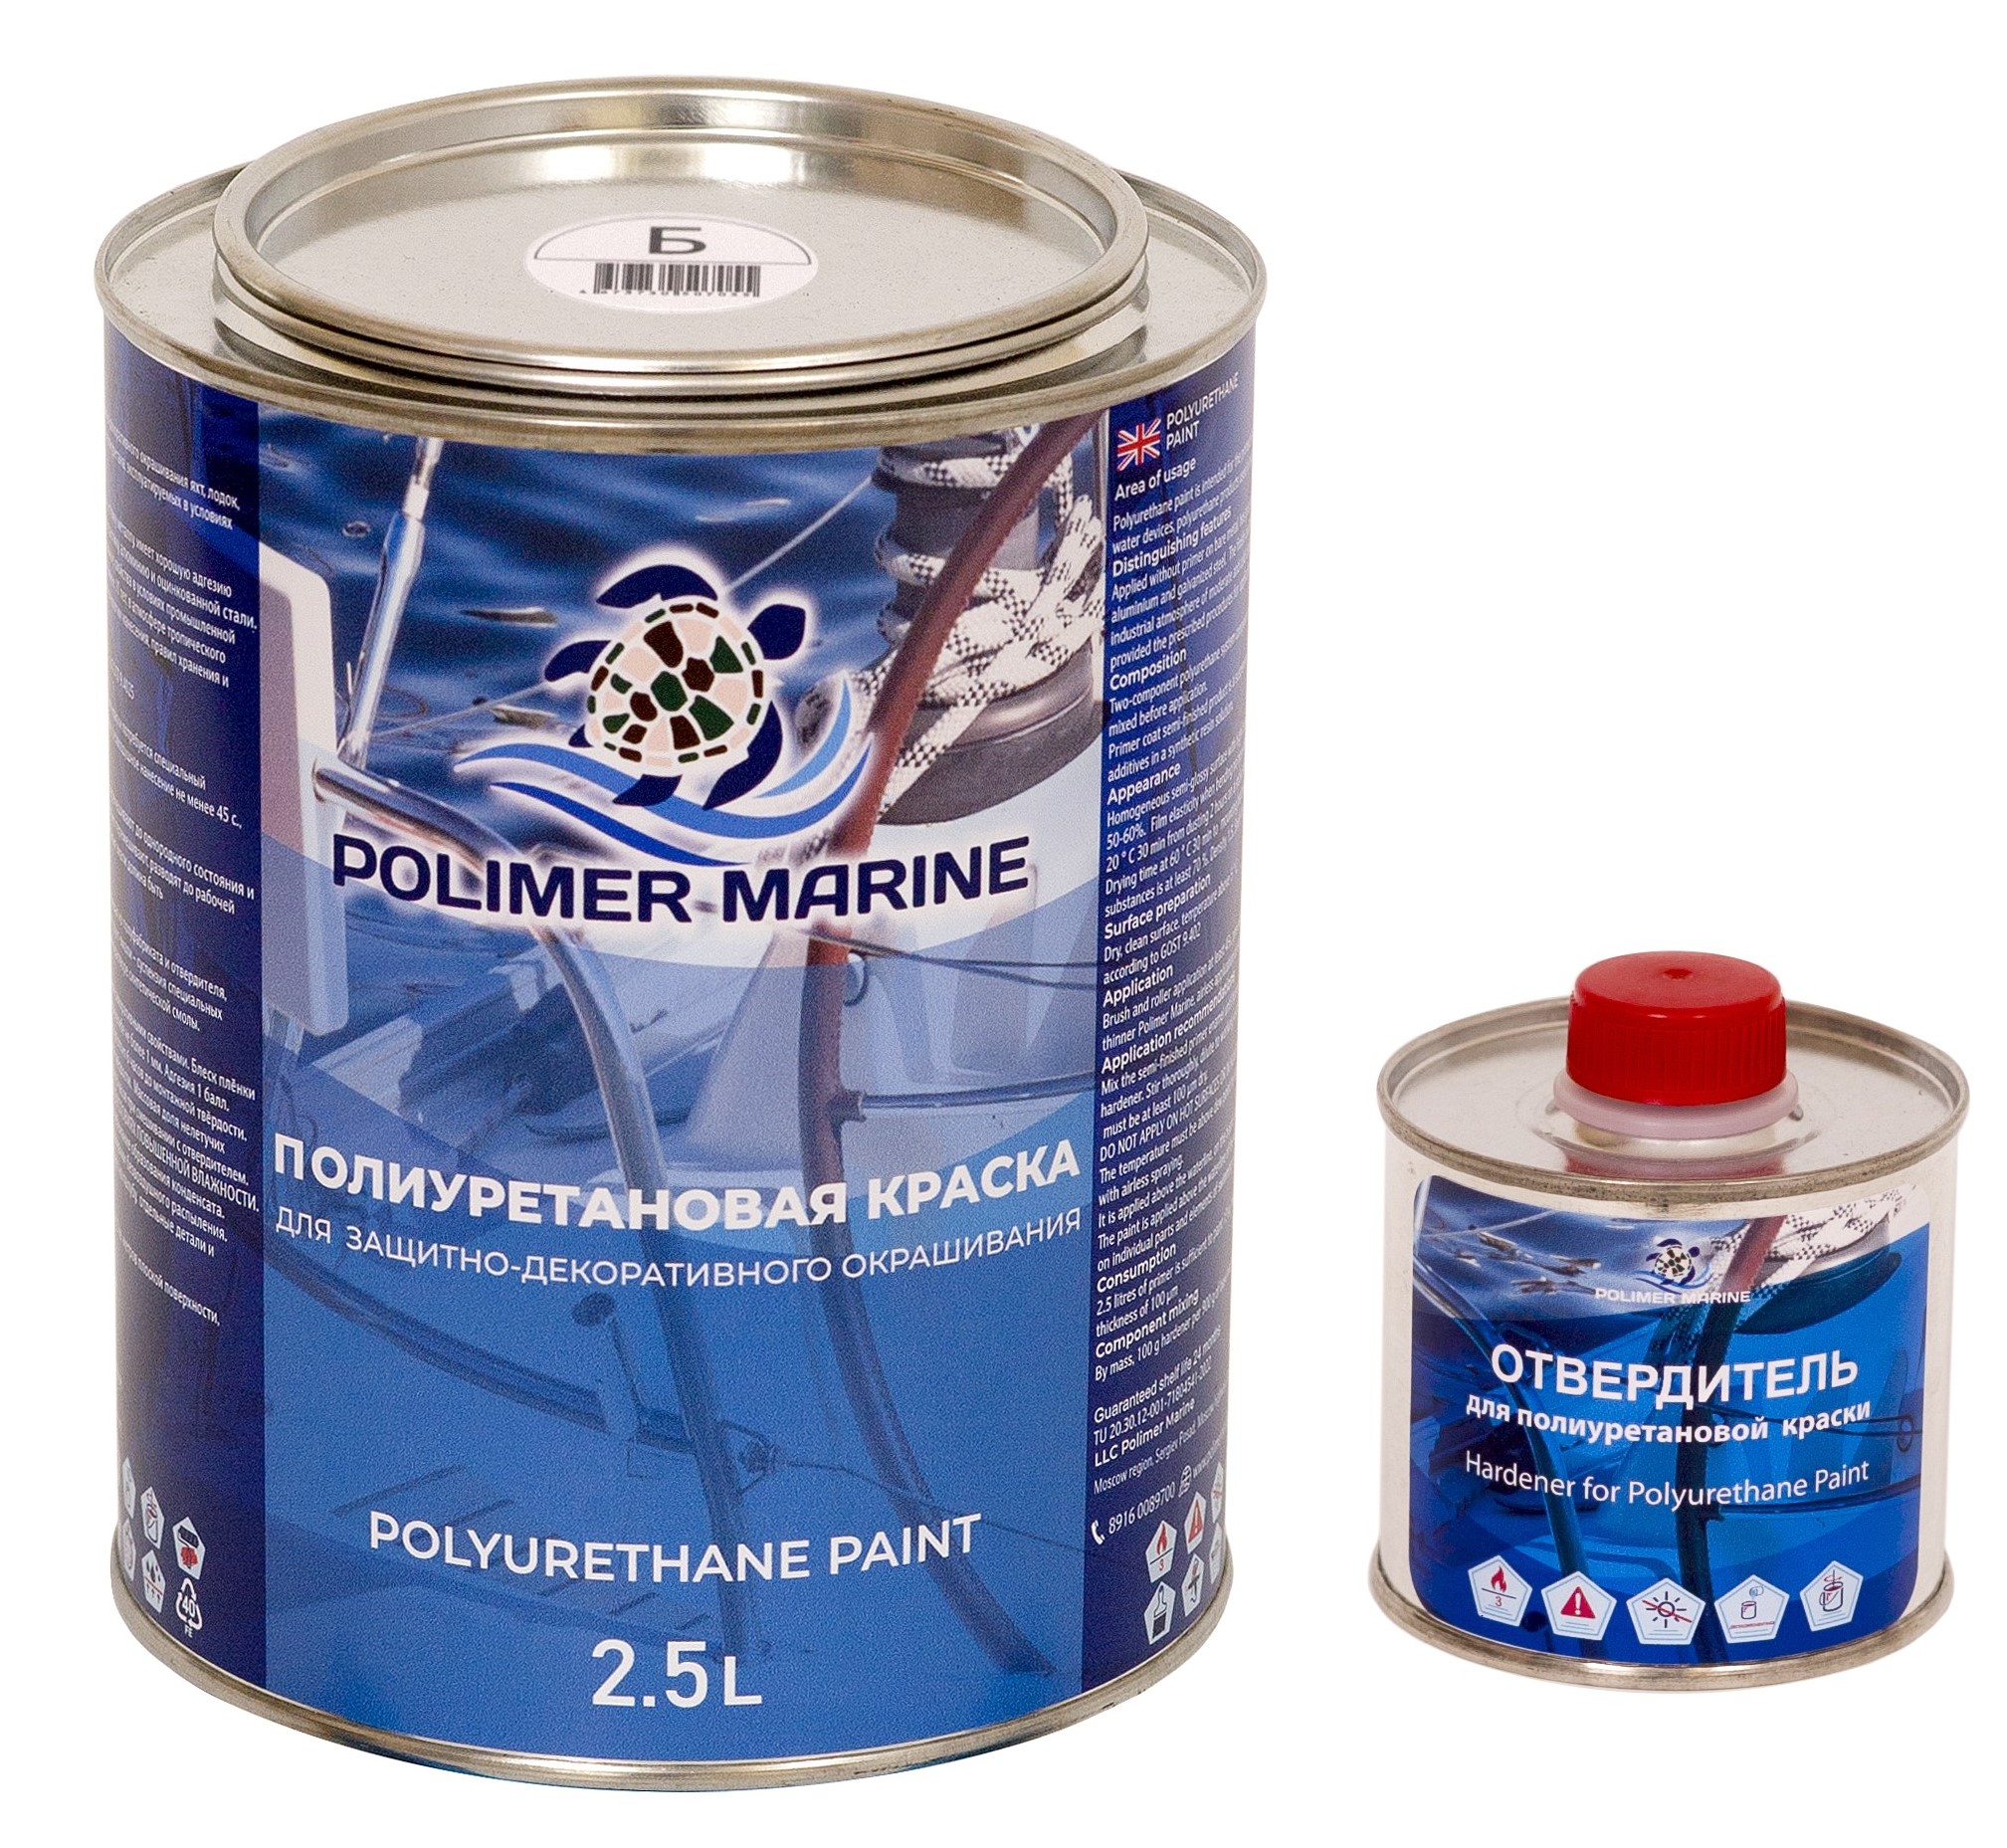 Полиуретановая краска Polimer Marine КП Кп25б белая 2.5 л двухкомпонентная 2К полиуретановая краска серая 2 5 л polimer marine двухкомпонентная 2к